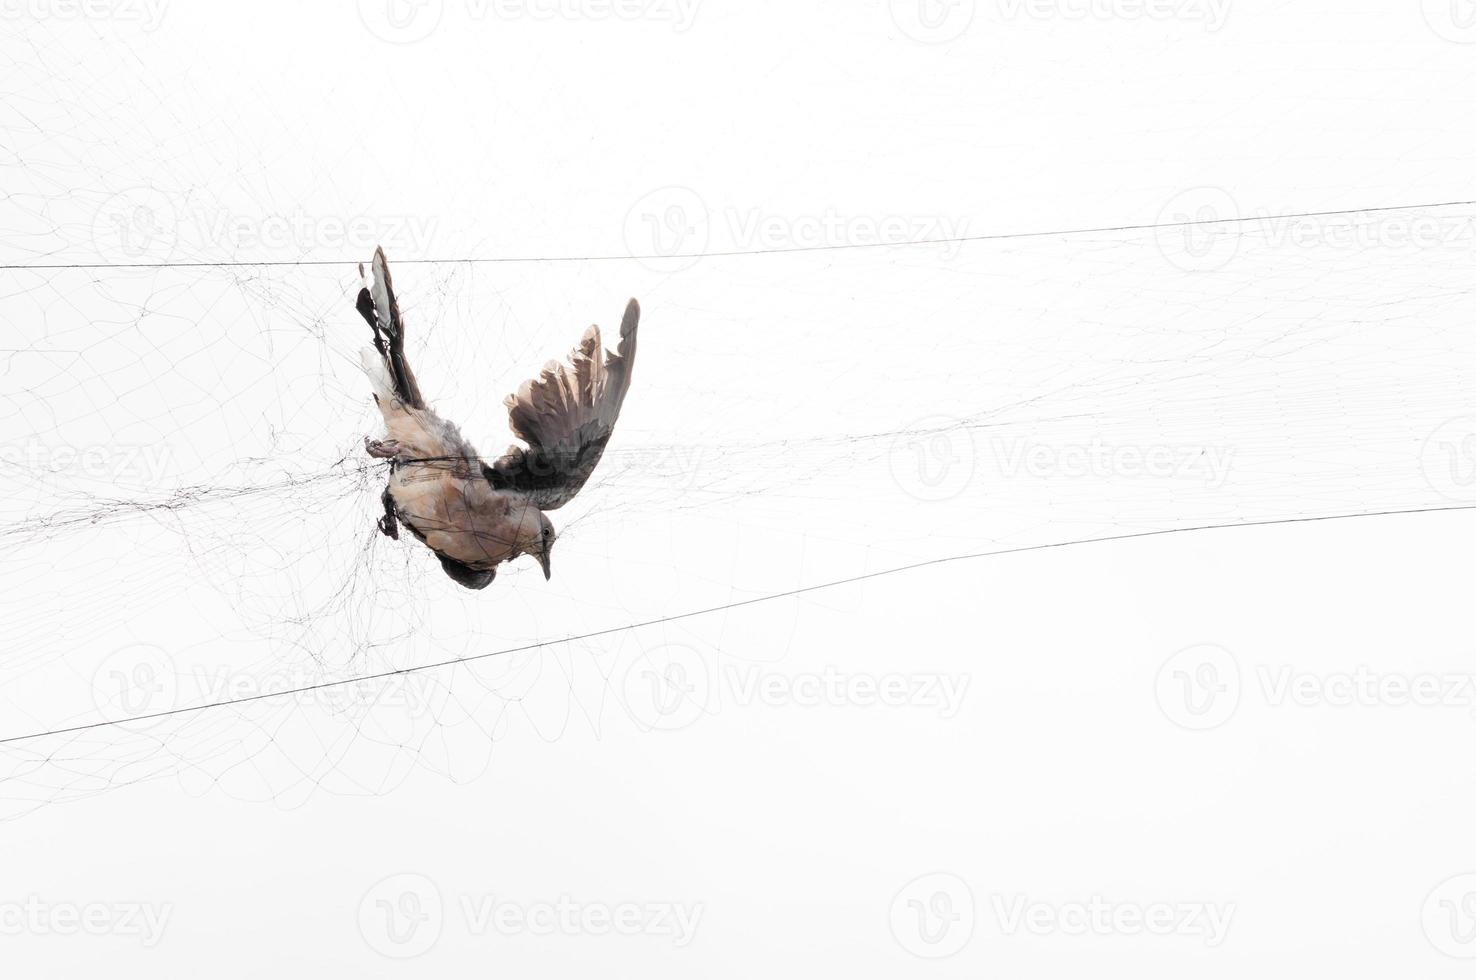 Bird were caught by a gardener on a mesh on white background,Illegal Bird Trap photo